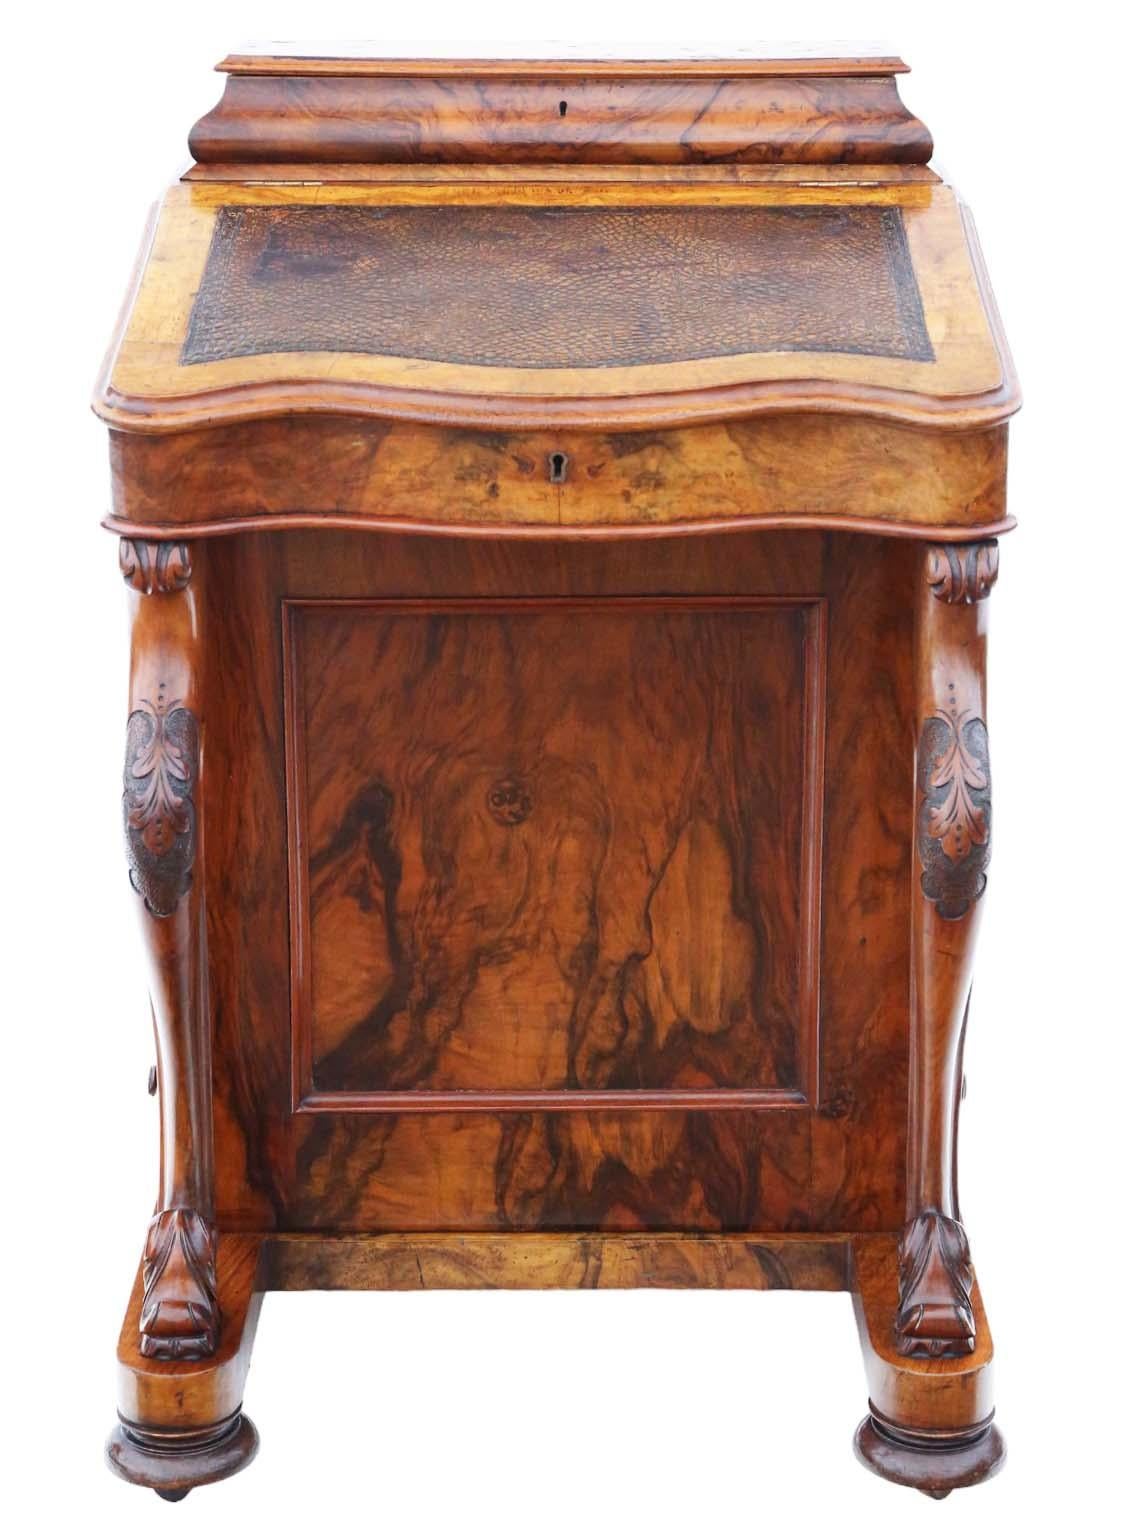 Nous vous présentons une exquise table à écrire victorienne Davenport en ronce et noyer figuré, datant d'environ 1870. Cette pièce charmante respire l'ancienneté et le caractère, ce qui en fait une pièce rare et recherchée par les amateurs